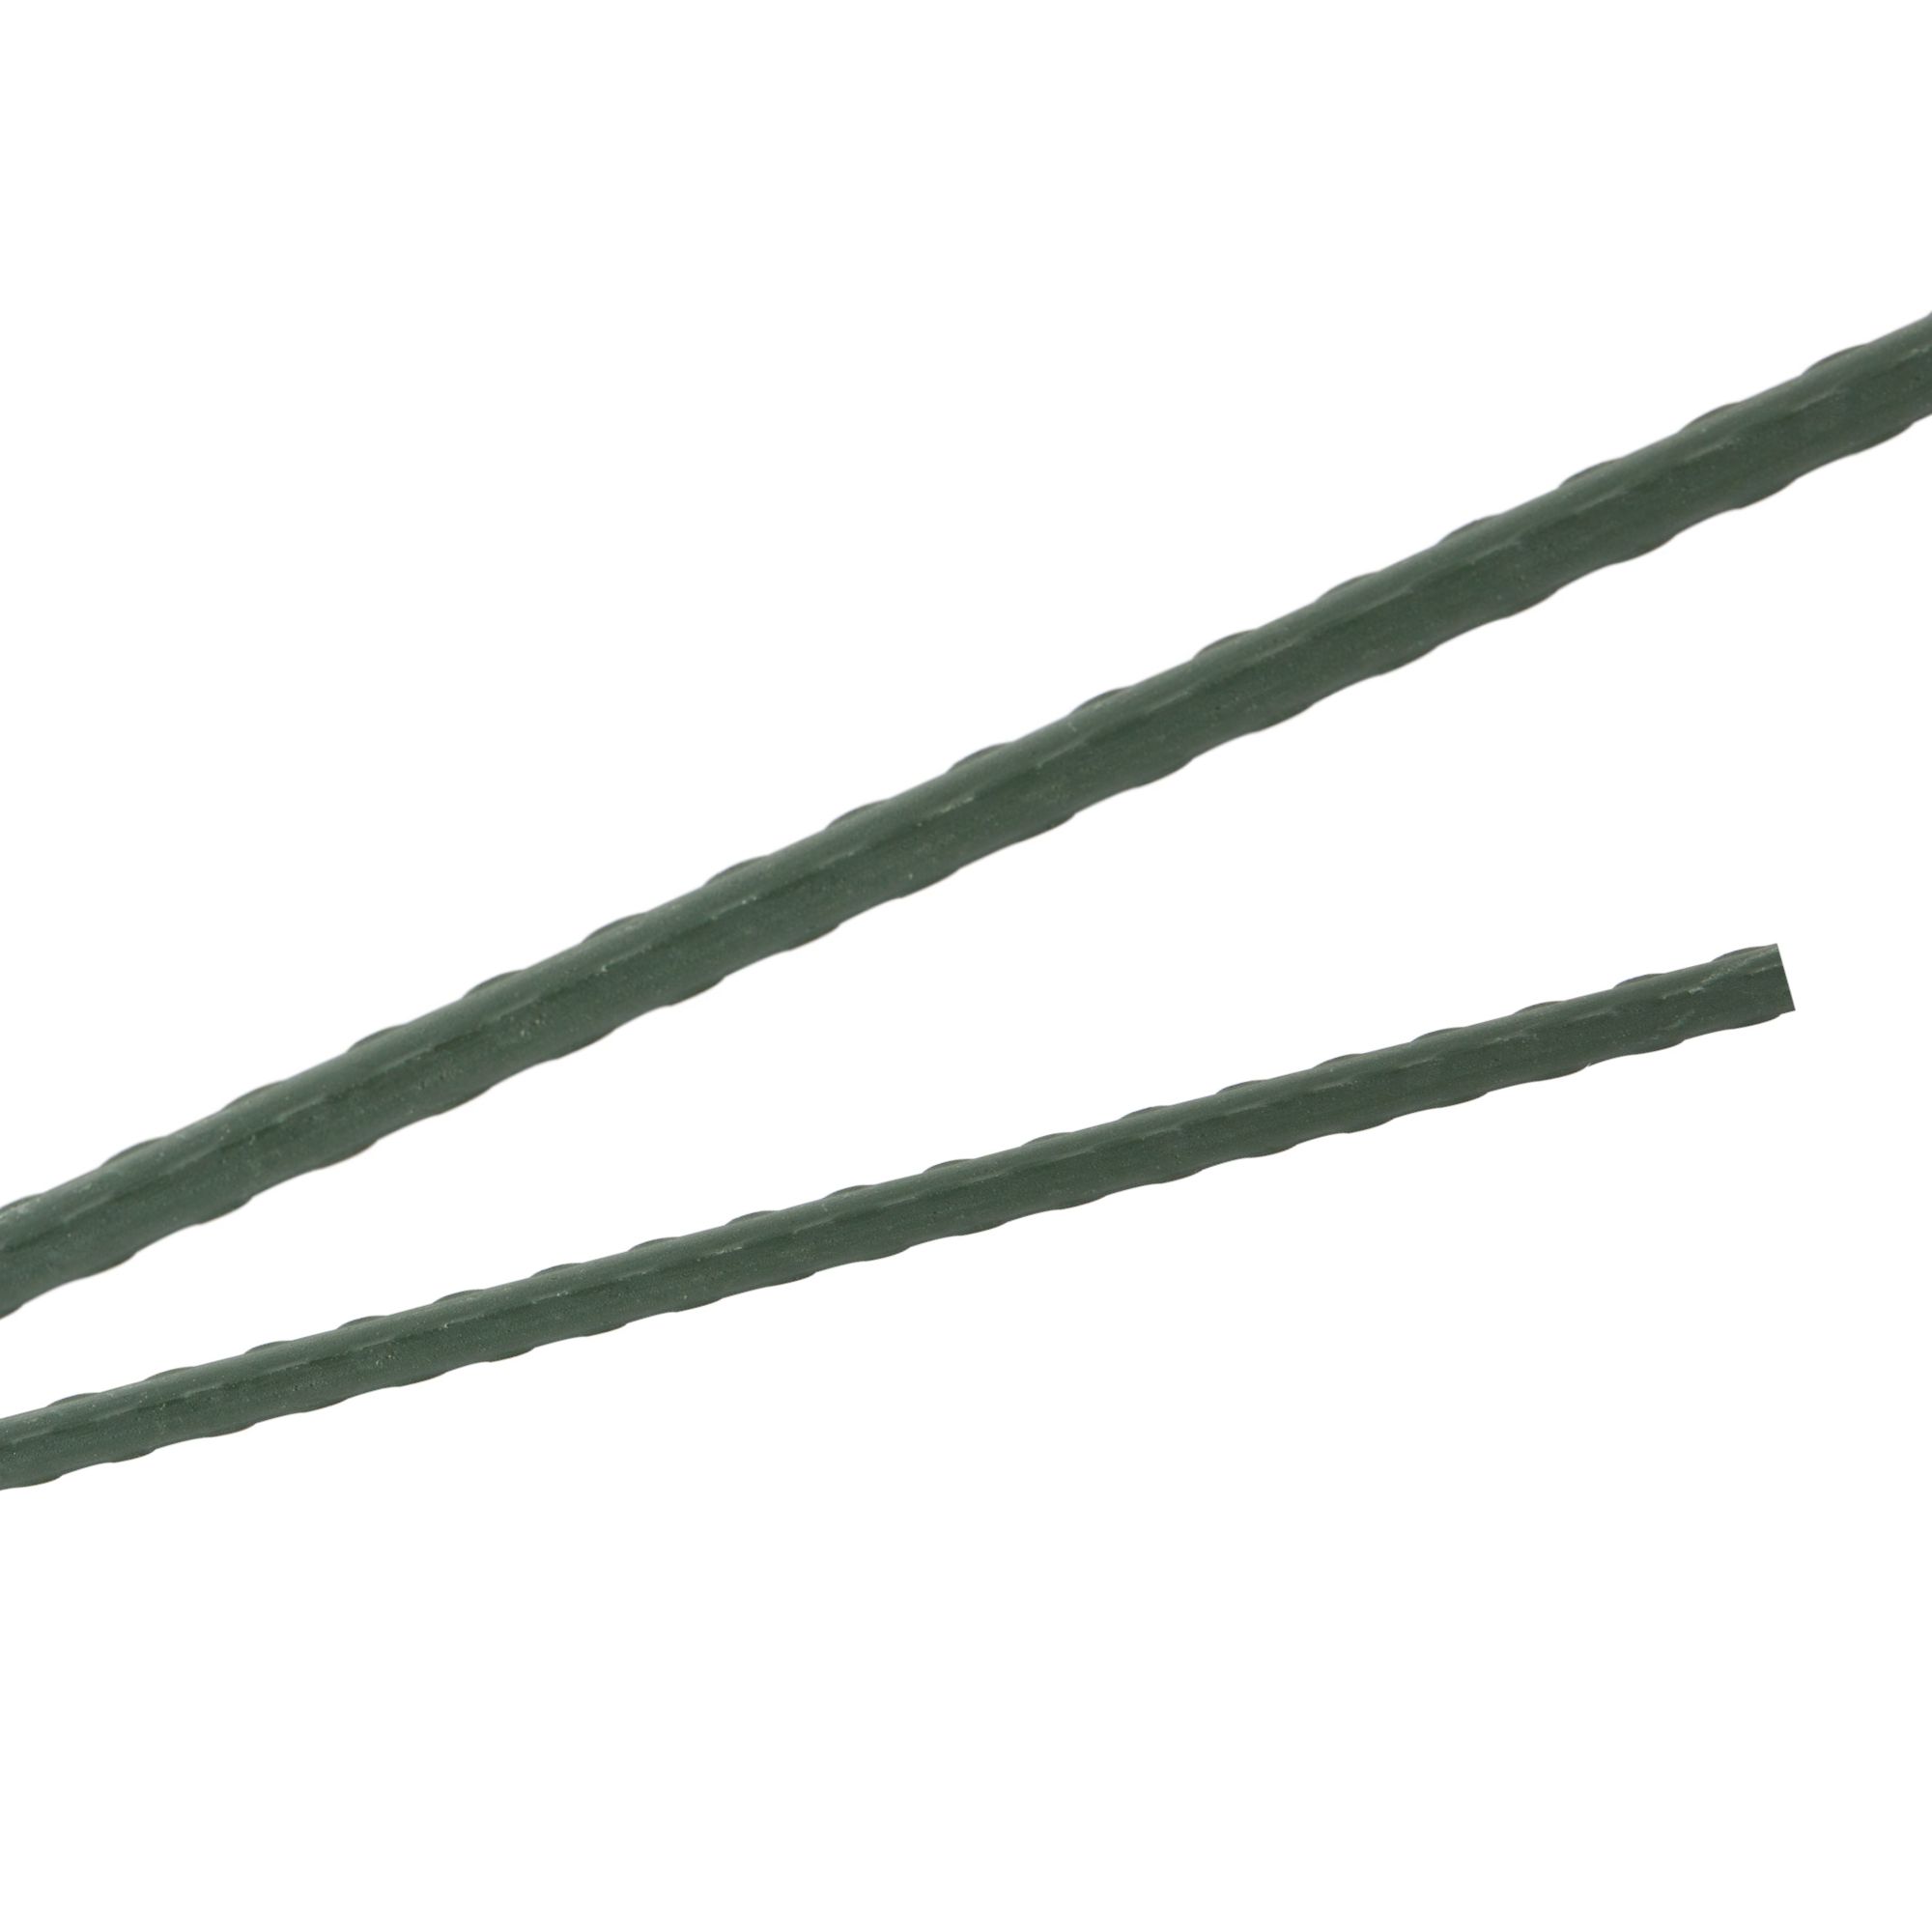 Tyč podpěrná, 16mm, 120cm, kov+PVC, zelená 0.150000 Kg GIGA Sklad20 32013 128